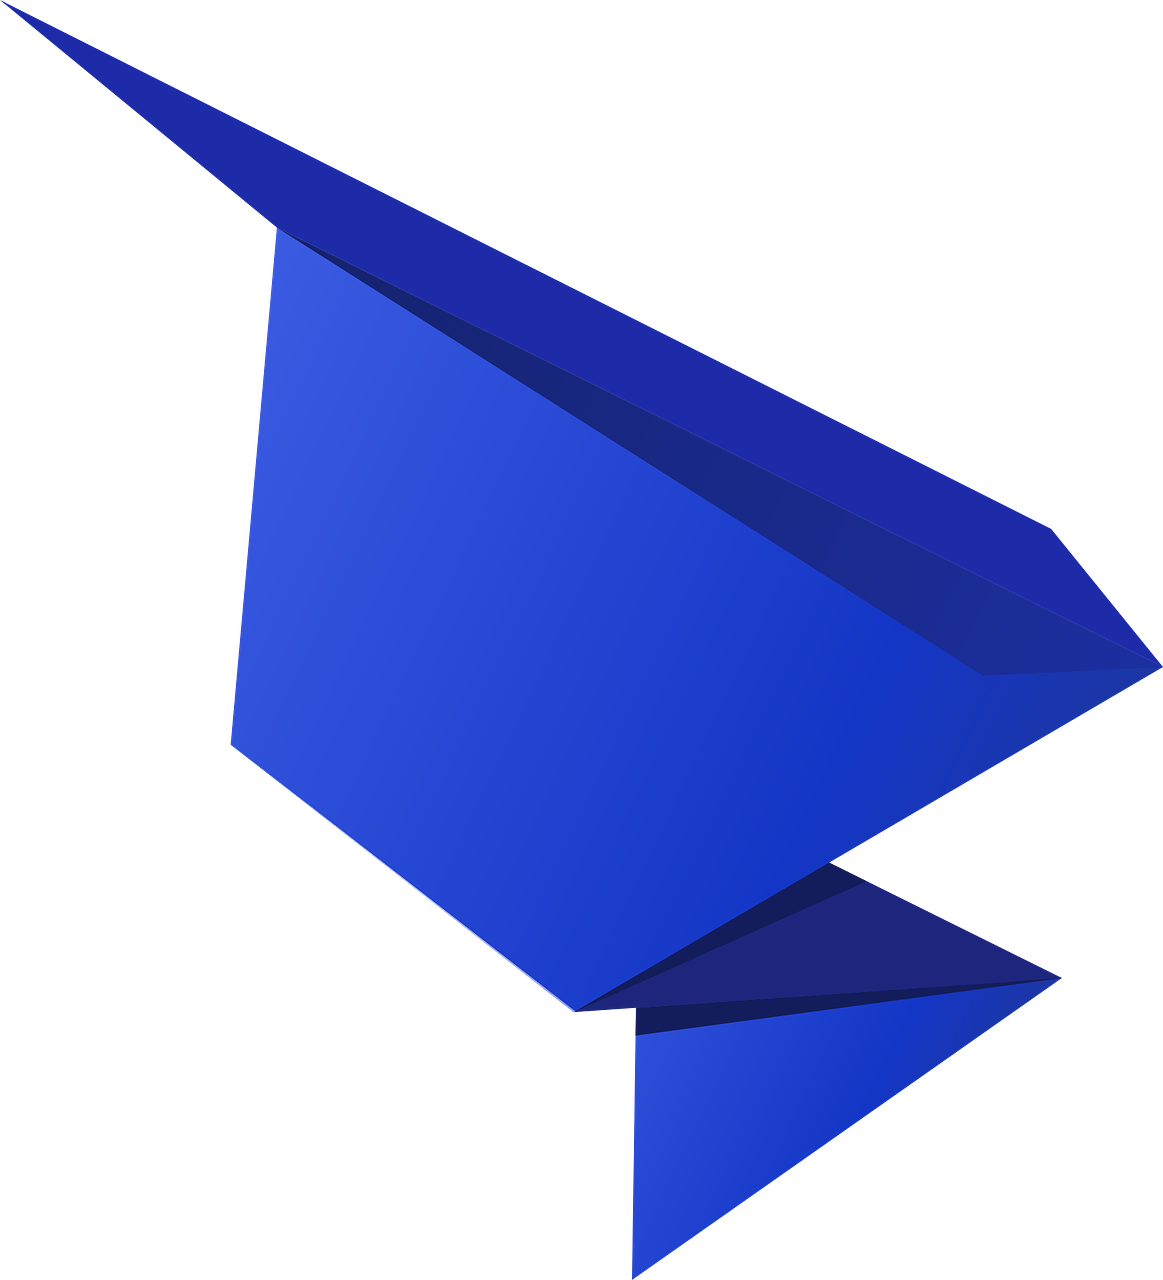 Origami, Popieriaus Lankstymo Menas, Kartus, 3 Matmenys, Objektas, Tradiciškai, Geometrinis Kūnas, Mėlynas, Grafika, Pastaba